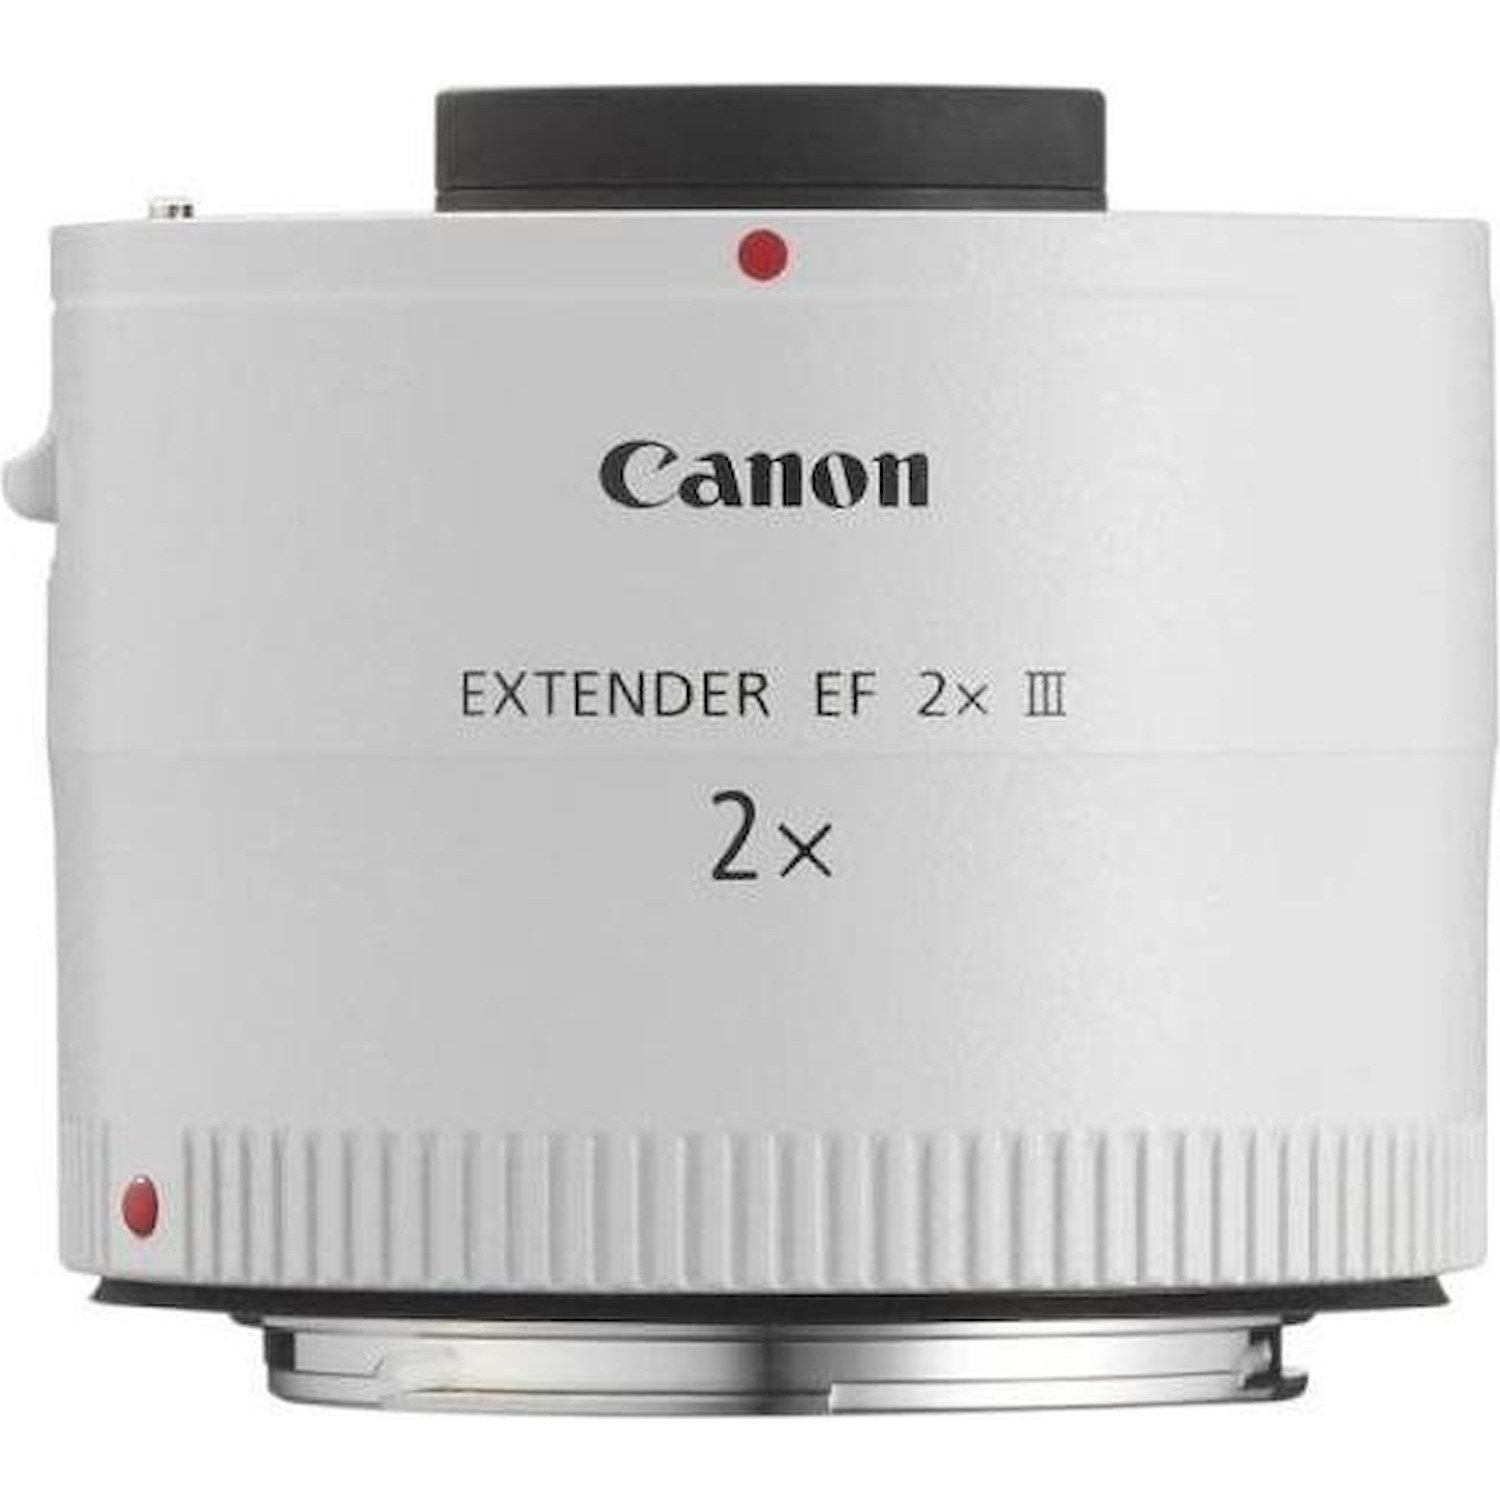 Immagine per Extender Canon EF 2X III da DIMOStore